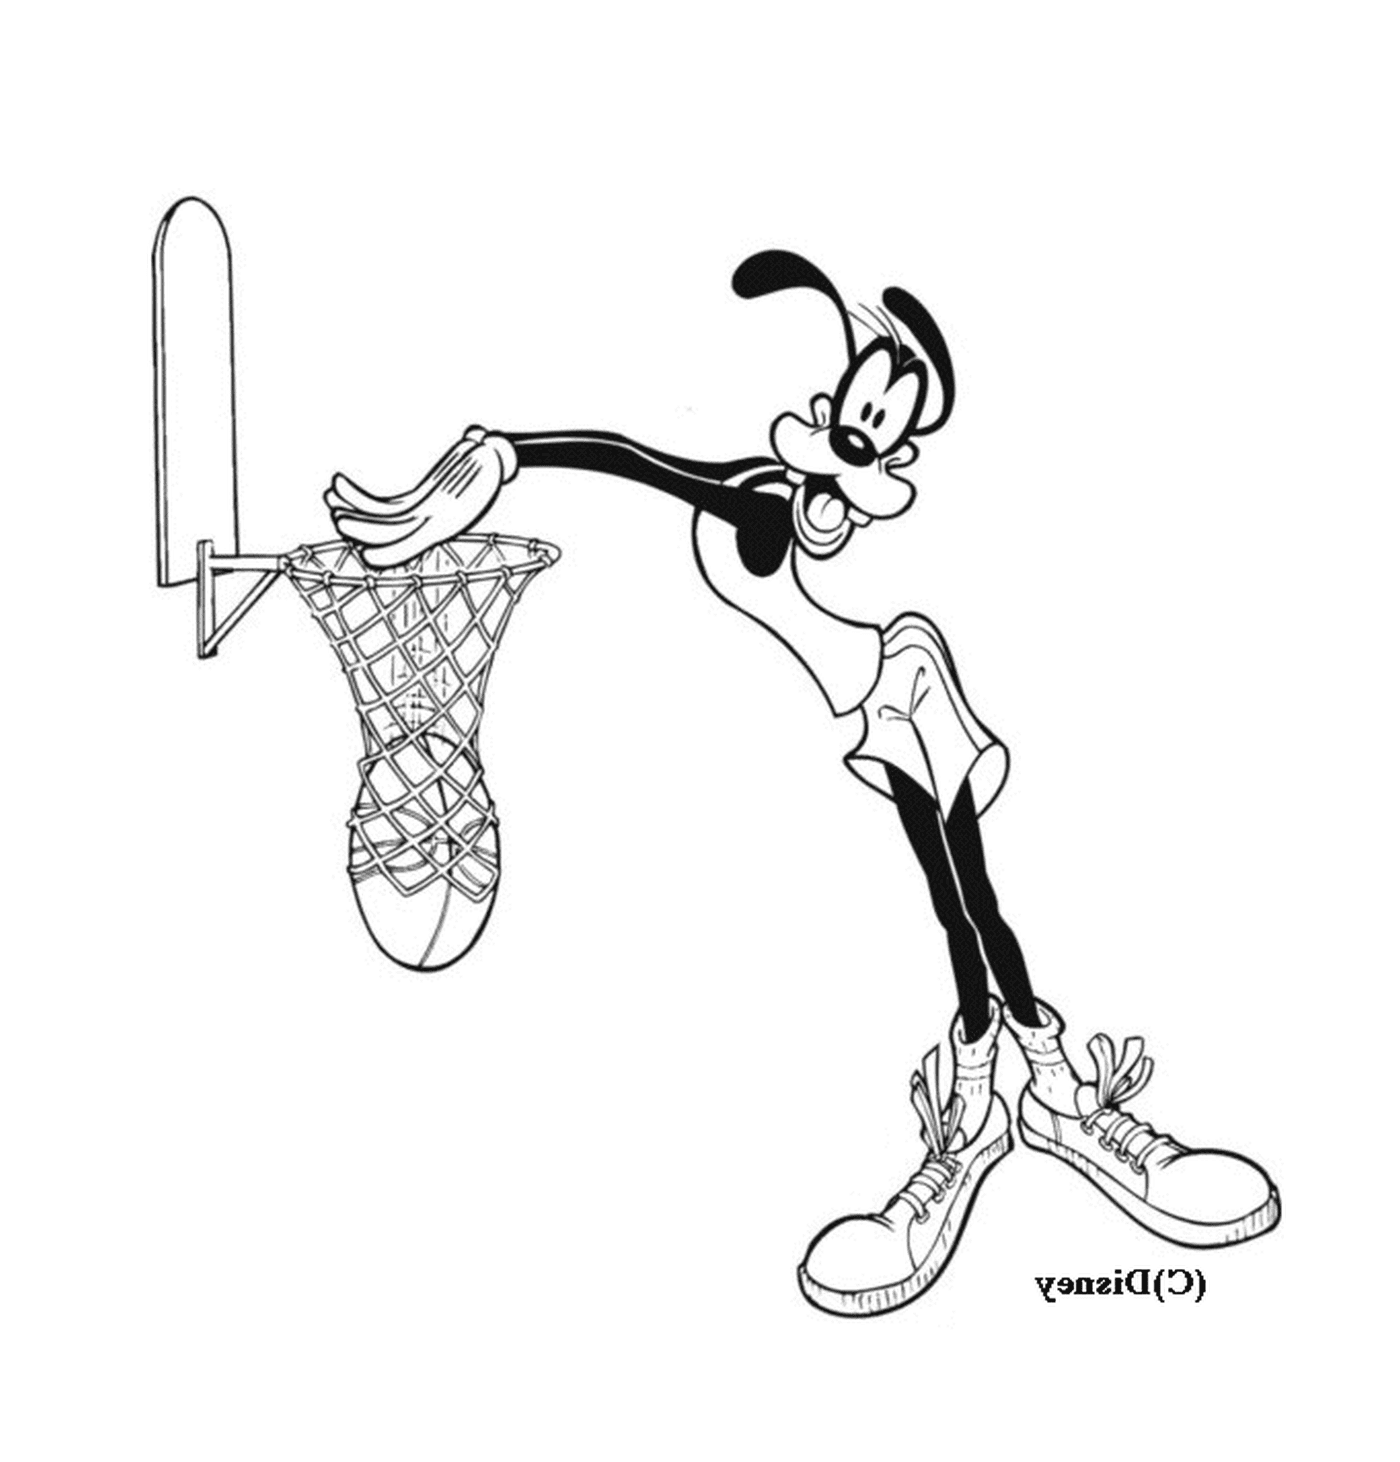  Dingo juega baloncesto en una caricatura 